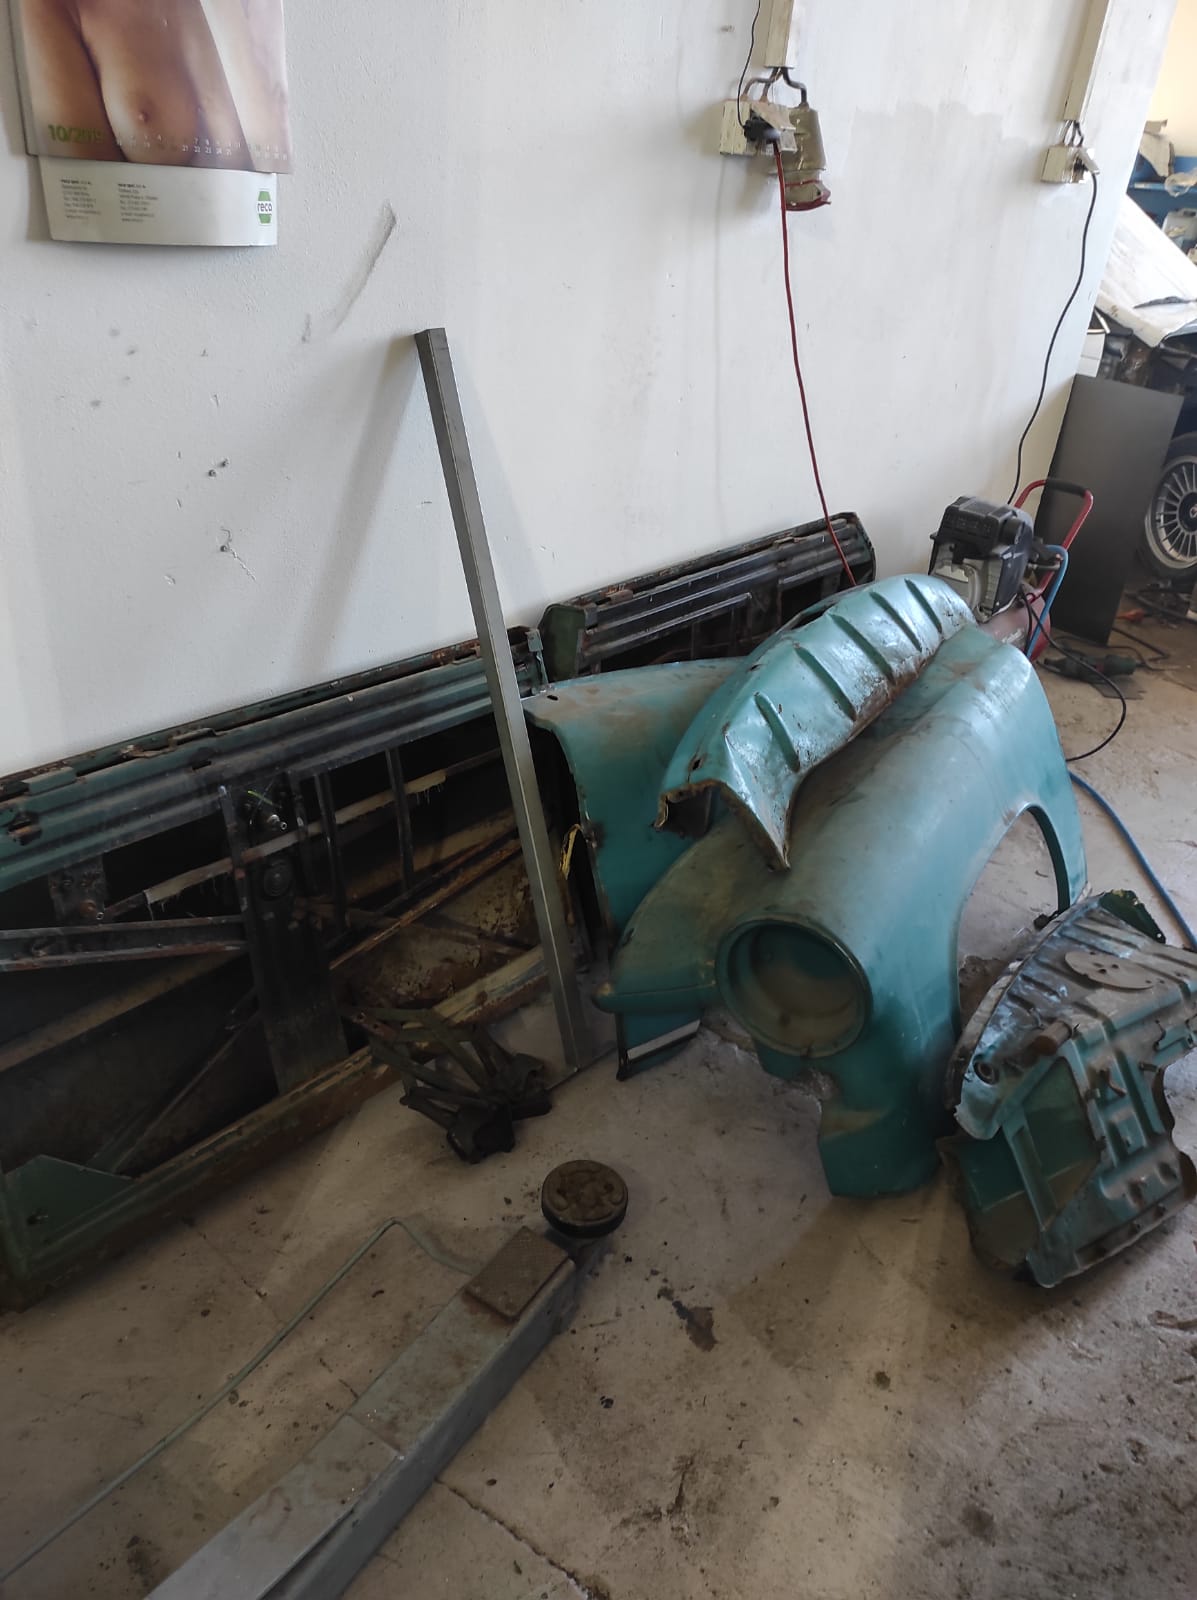 restauration restaurierung wartburg 311 cabrio karosserie